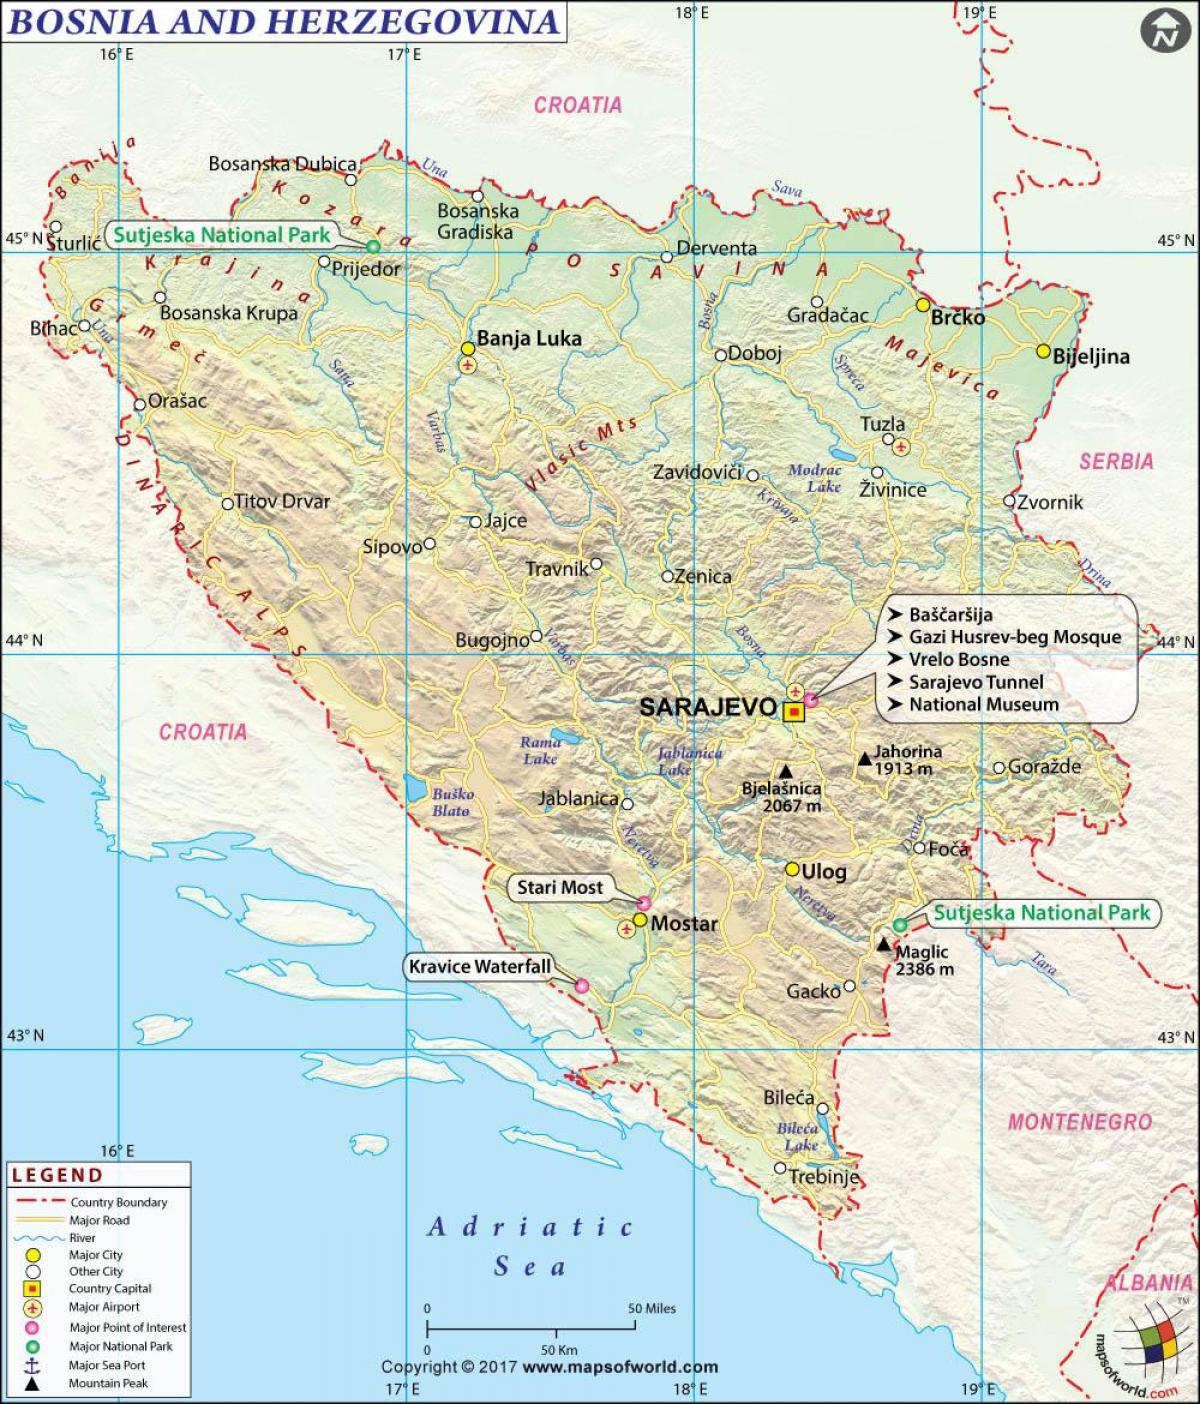 کا نقشہ بوسنیا ملک